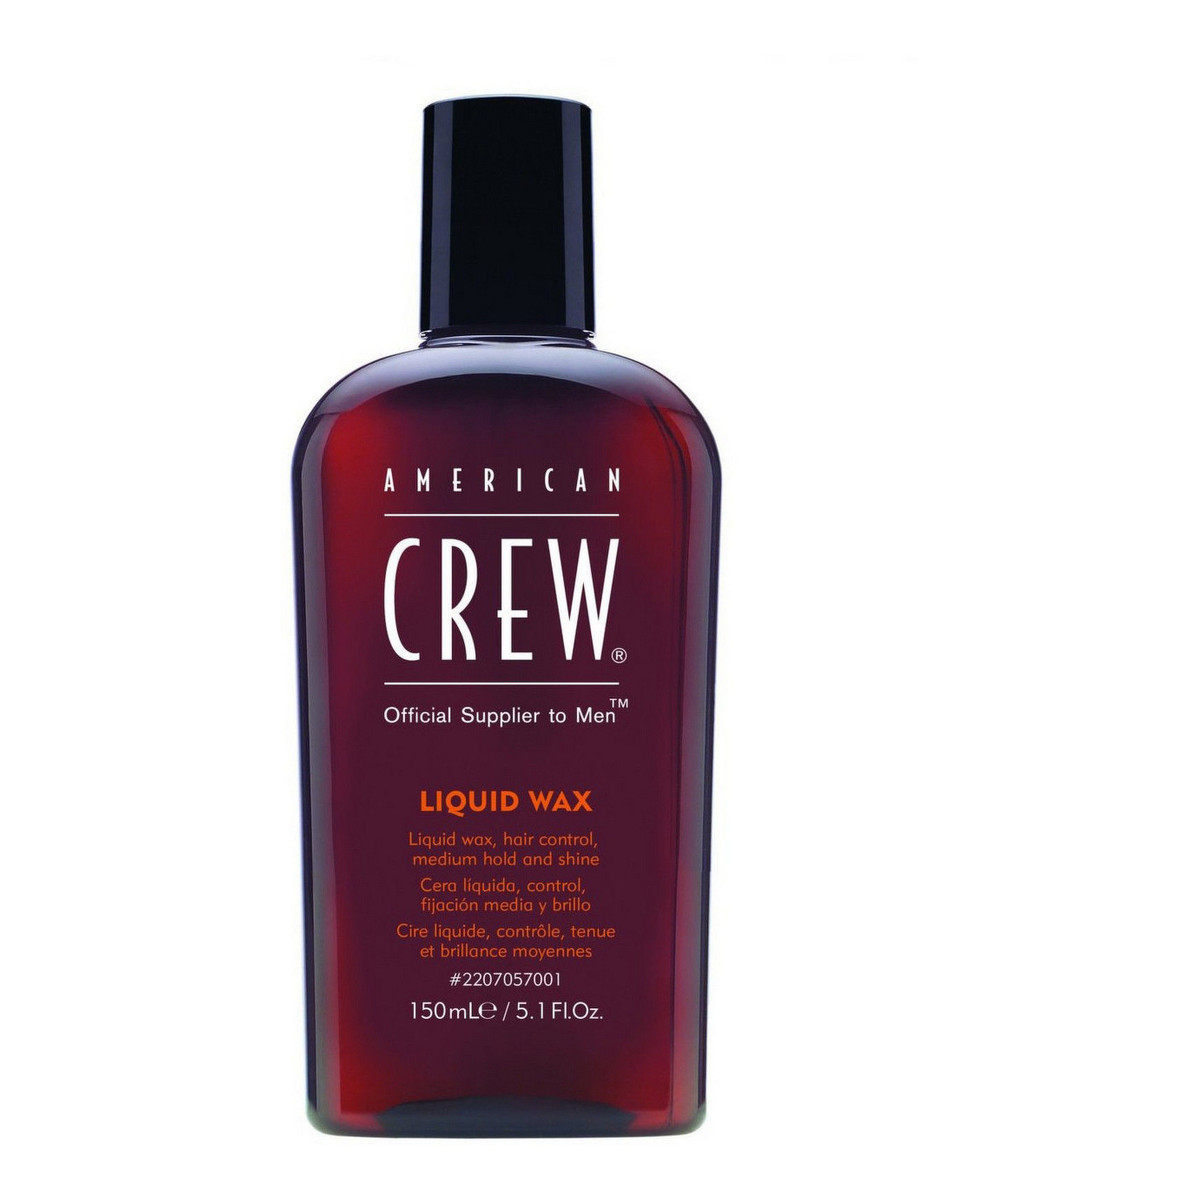 American Crew Liquid Wax Płynny wosk do stylizacji włosów 150ml